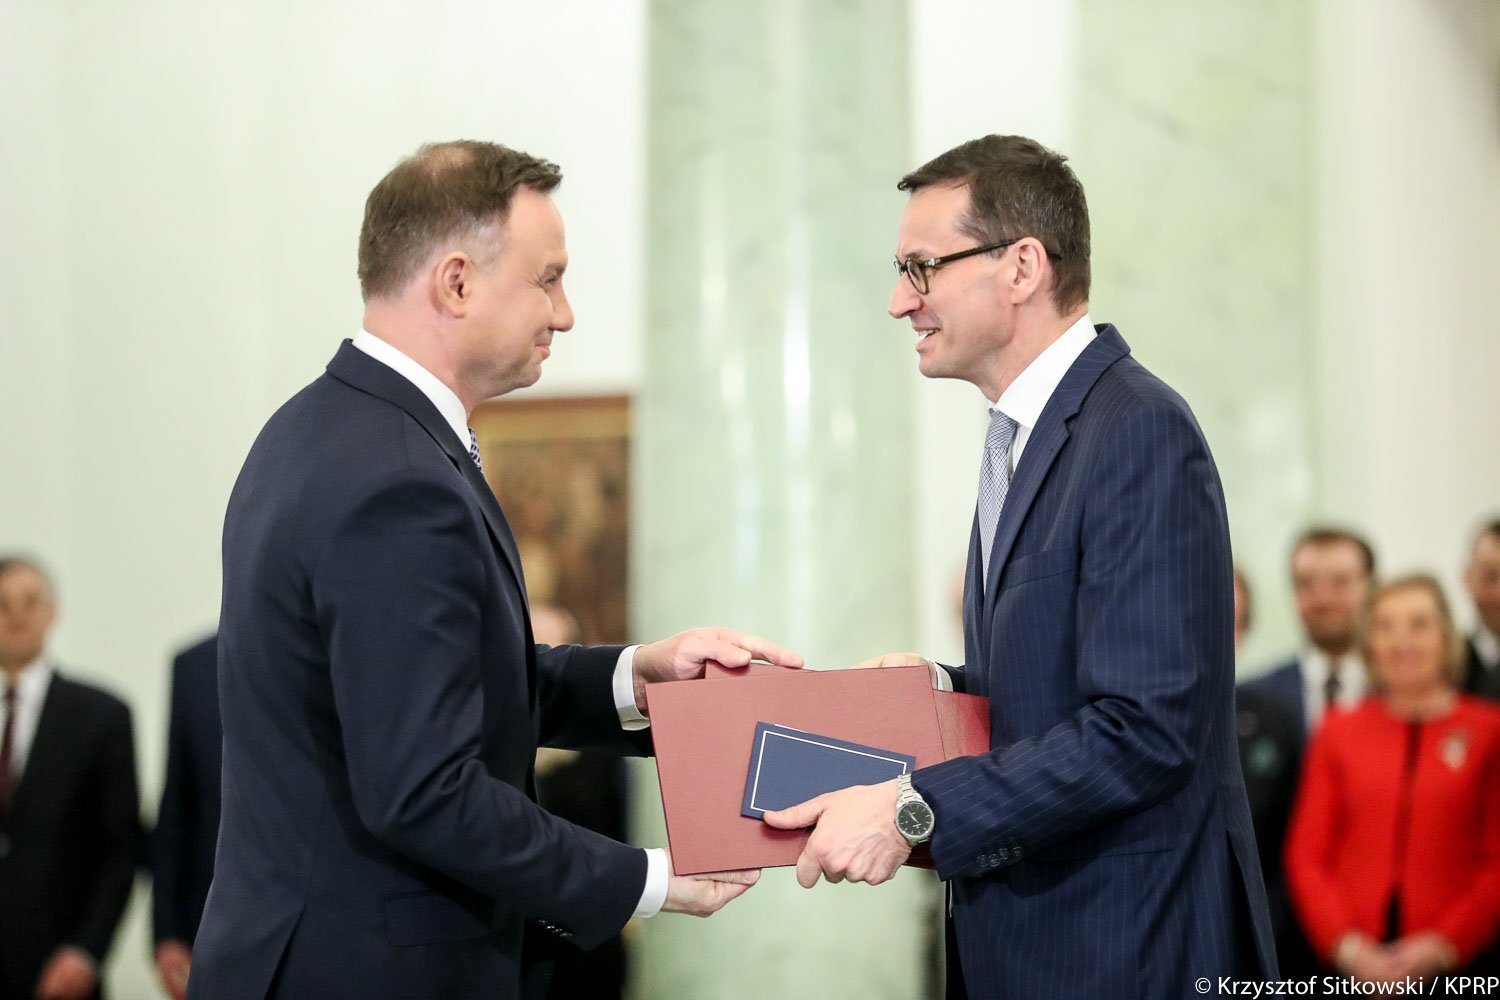 Zdjęcie przedstawia prezydenta Andrzeja Dudę, który wręcza nominację na stanowisko Prezesa Rady Ministrów Mateuszowi Morawieckiemu. W tle pracownicy Kancelarii Prezydenta.